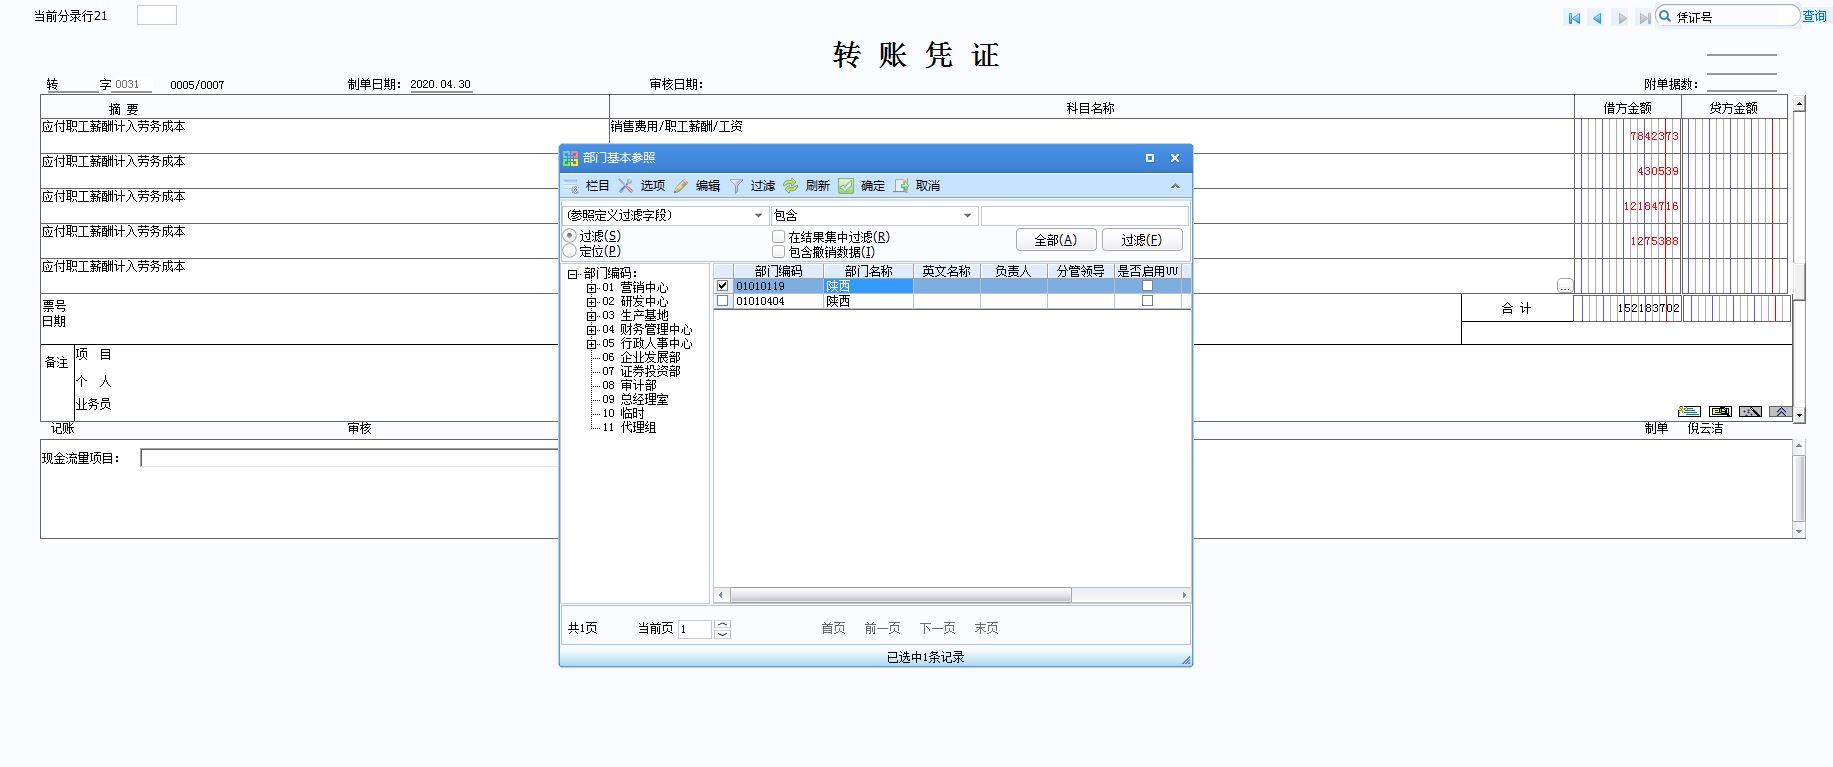 有王俊凯的记账软件是什么软件